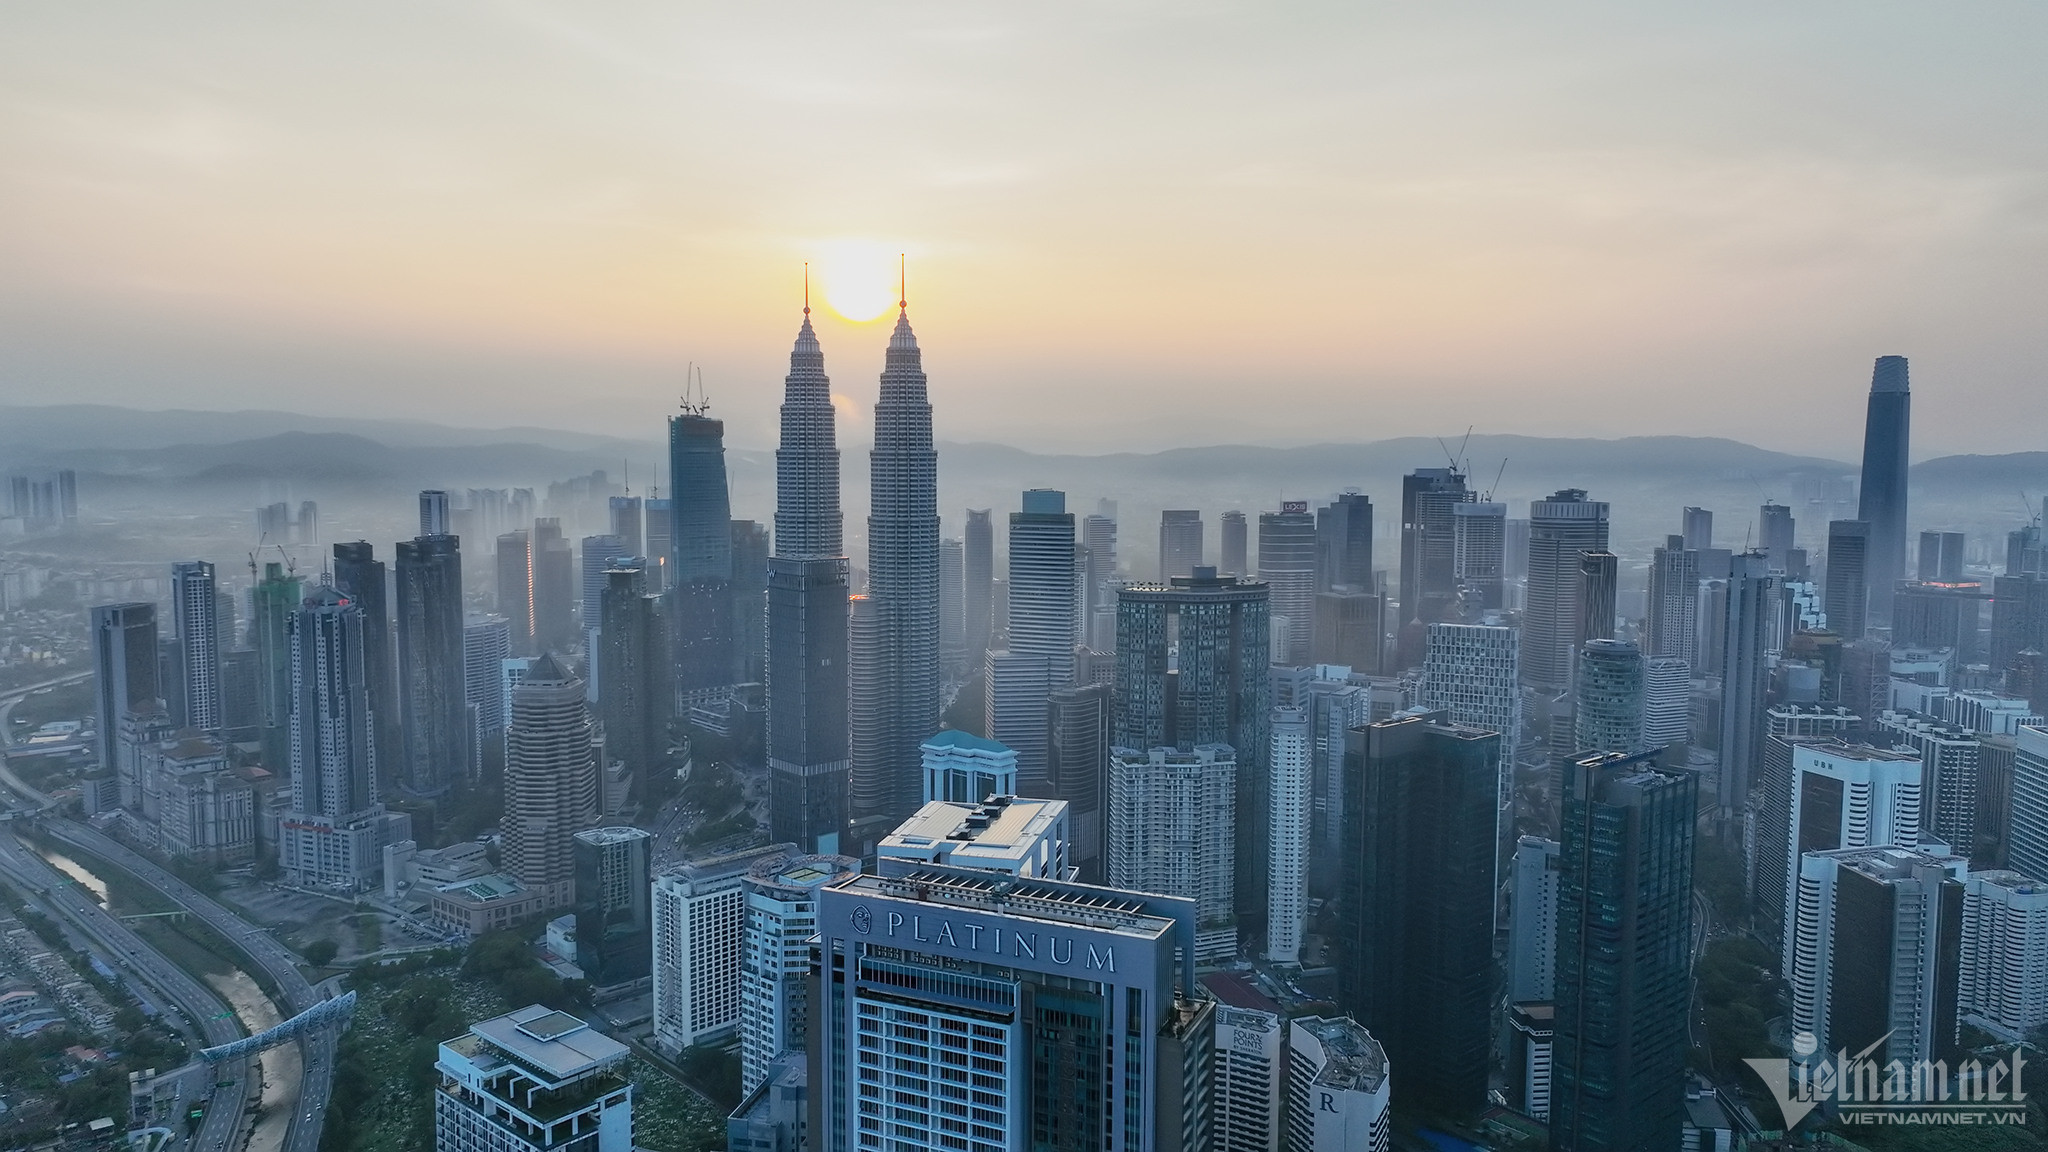 Bình minh trung tâm Kuala Lumpur nhìn từ trên cao